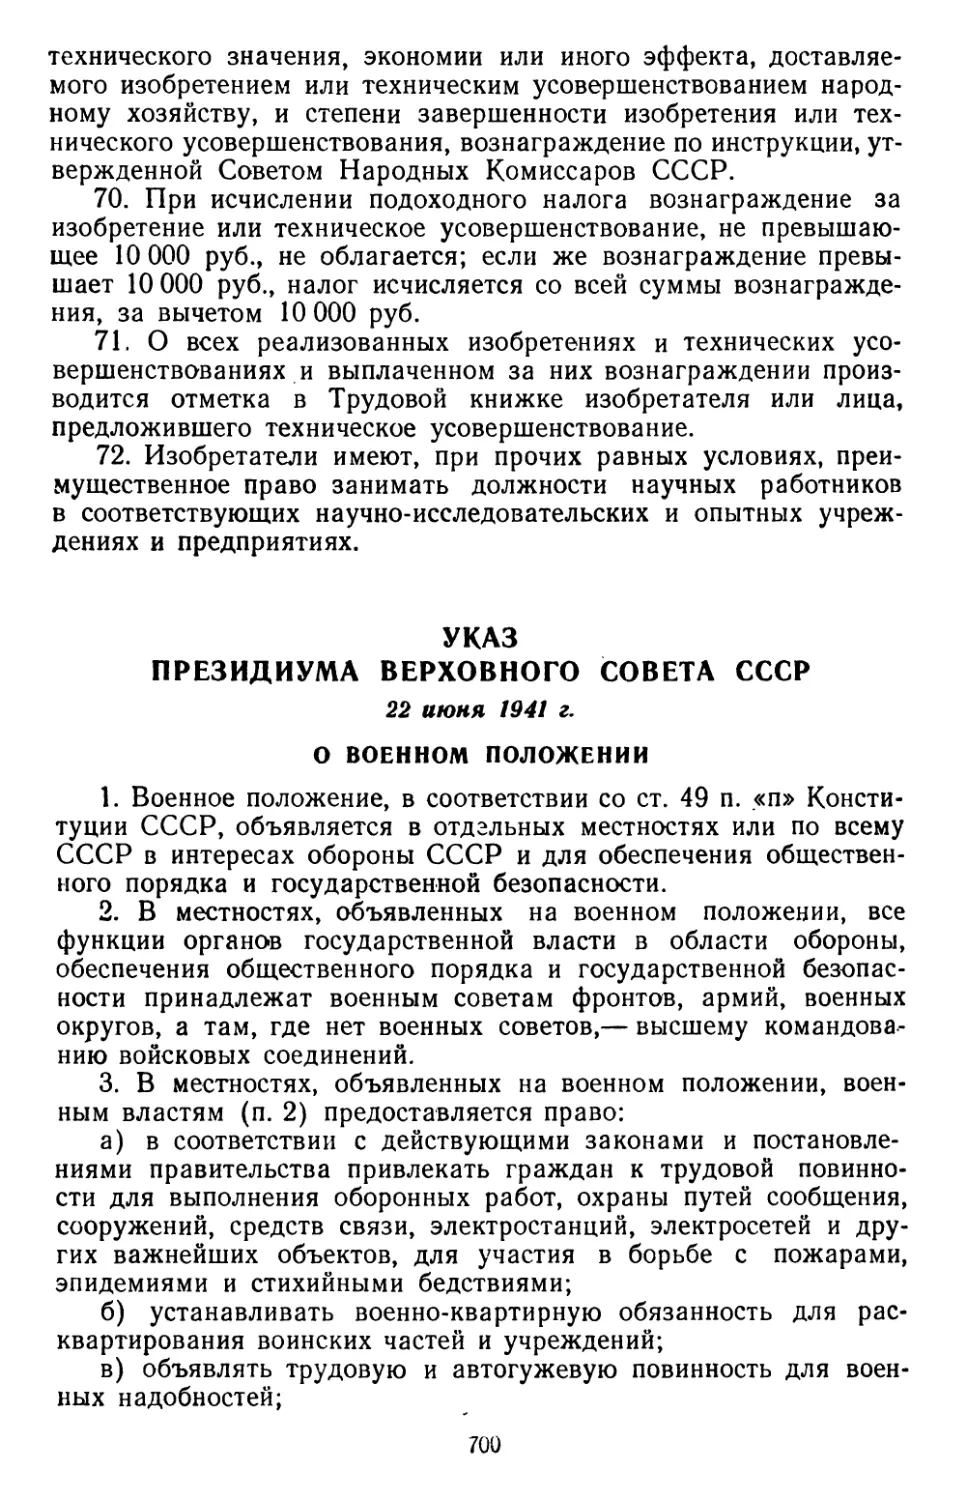 Указ Президиума Верховного Совета СССР, 22 июня 1941 г. О военном положении